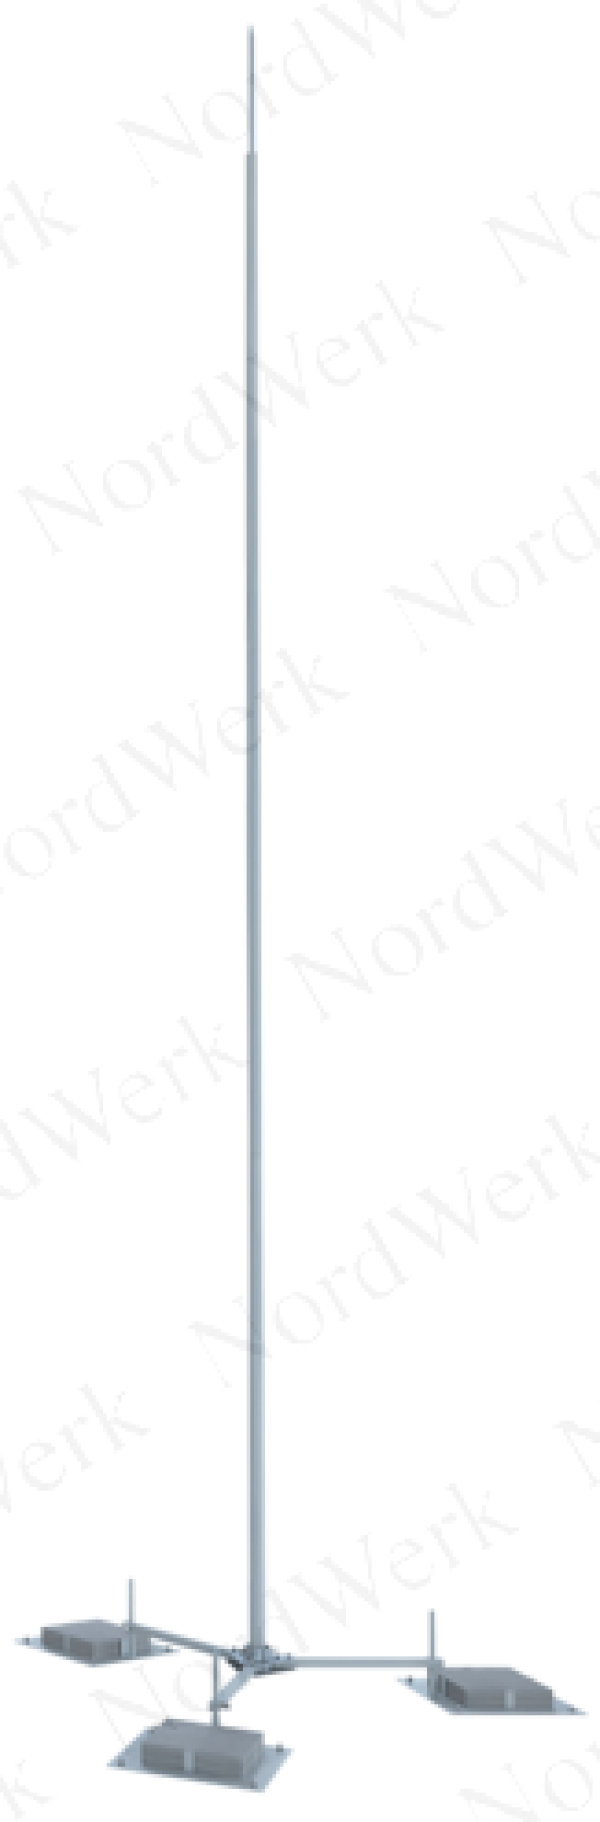 NordWerk МСАА-М-1,8-Т – Молниеотвод высотой 1,8 метров для активных молниеприемников (алюминий; с треногой)